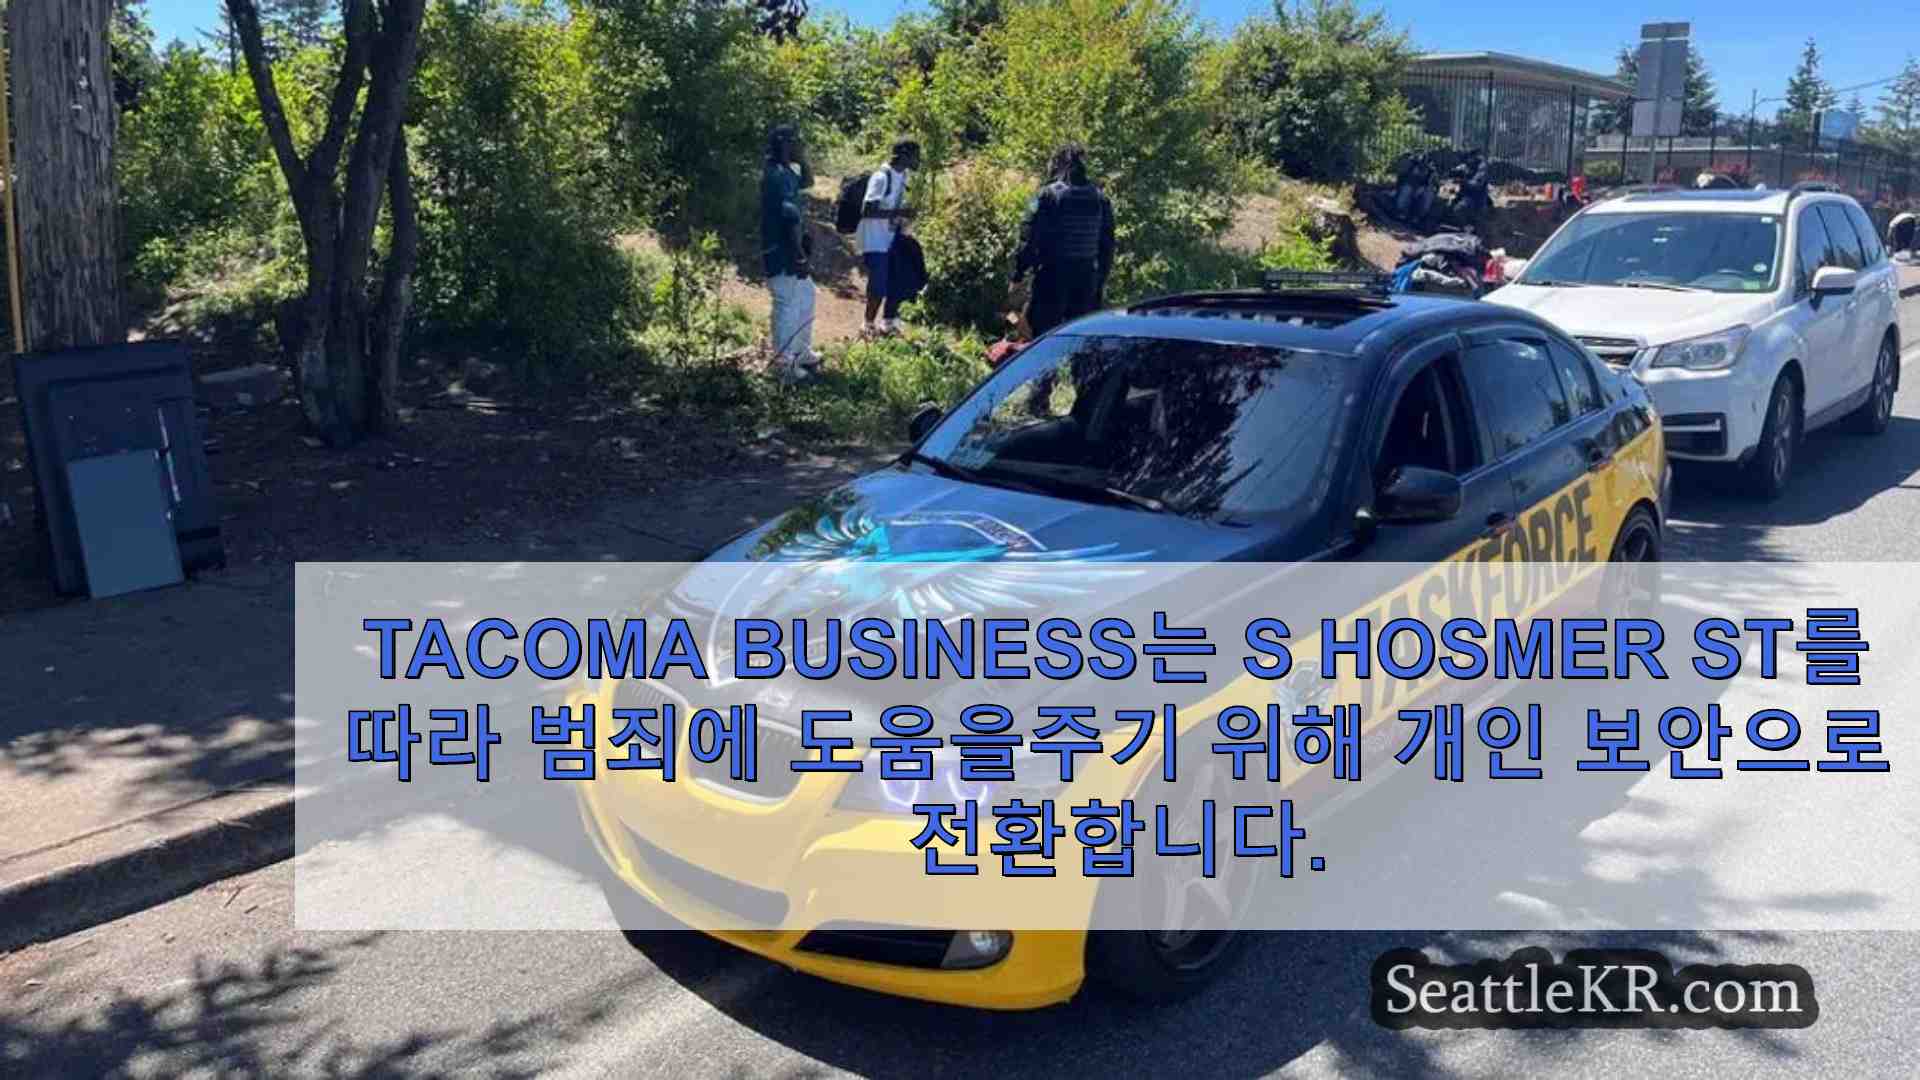 Tacoma Business는 S Hosmer st를 따라 범죄에 도움을주기 위해 개인 보안으로 전환합니다.